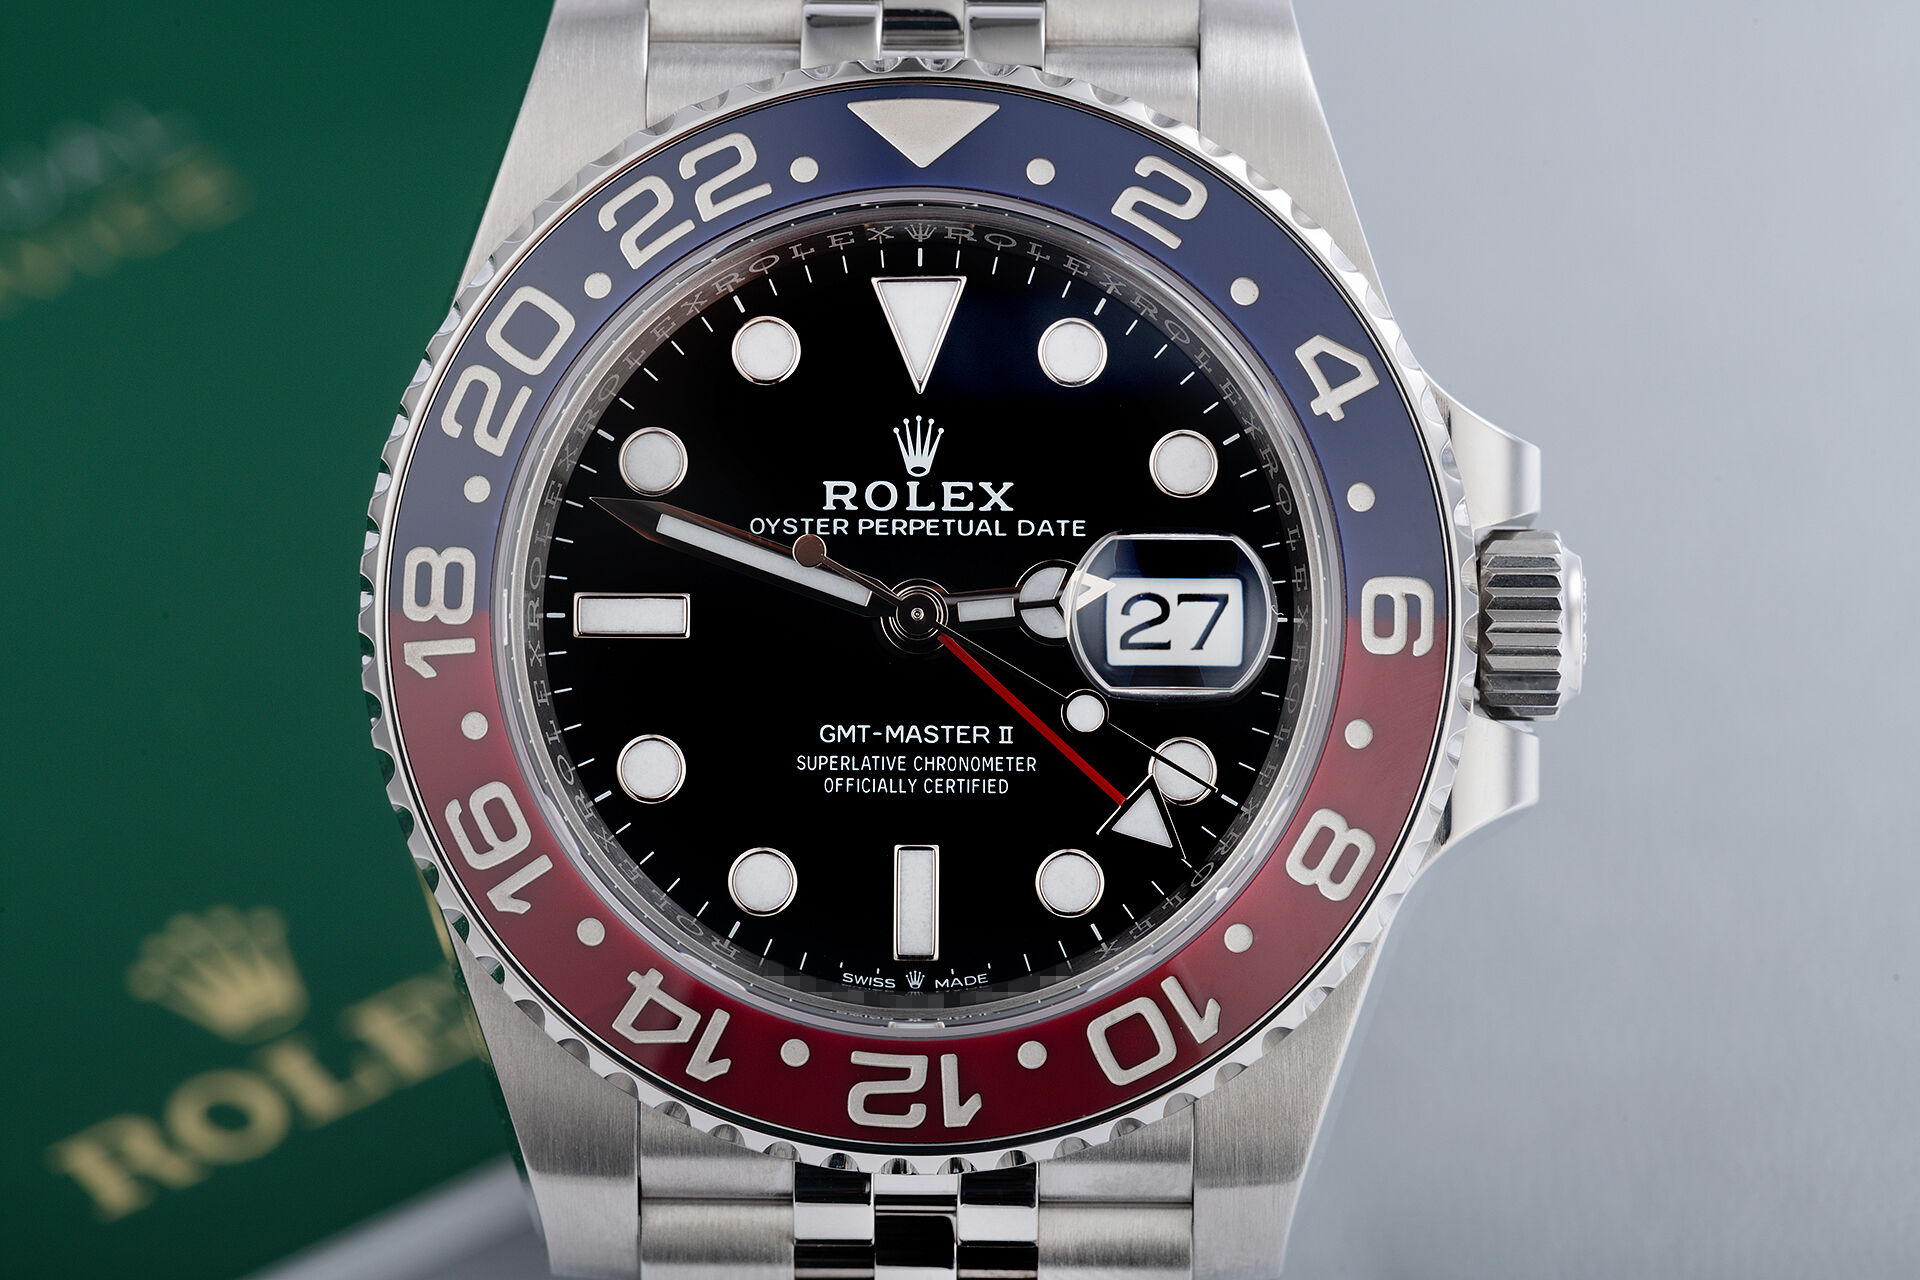 ref 126710BLRO | UK Retailed | Rolex GMT-Master II